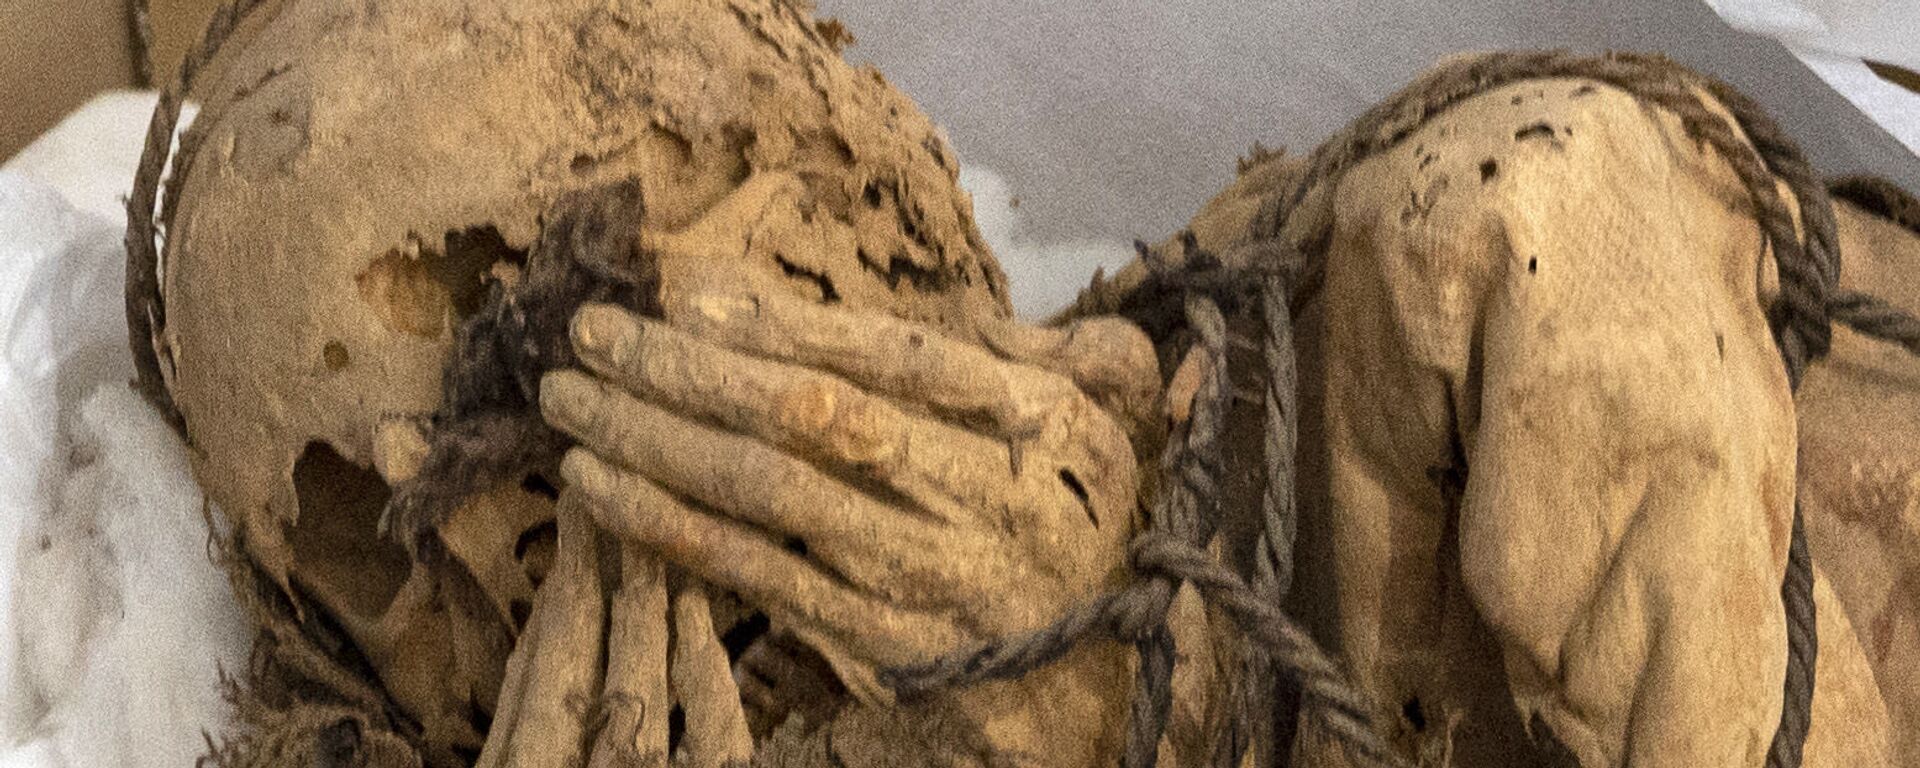 Обнаруженная мумия во время археологических раскопок в Перу  - Sputnik Mundo, 1920, 03.12.2021